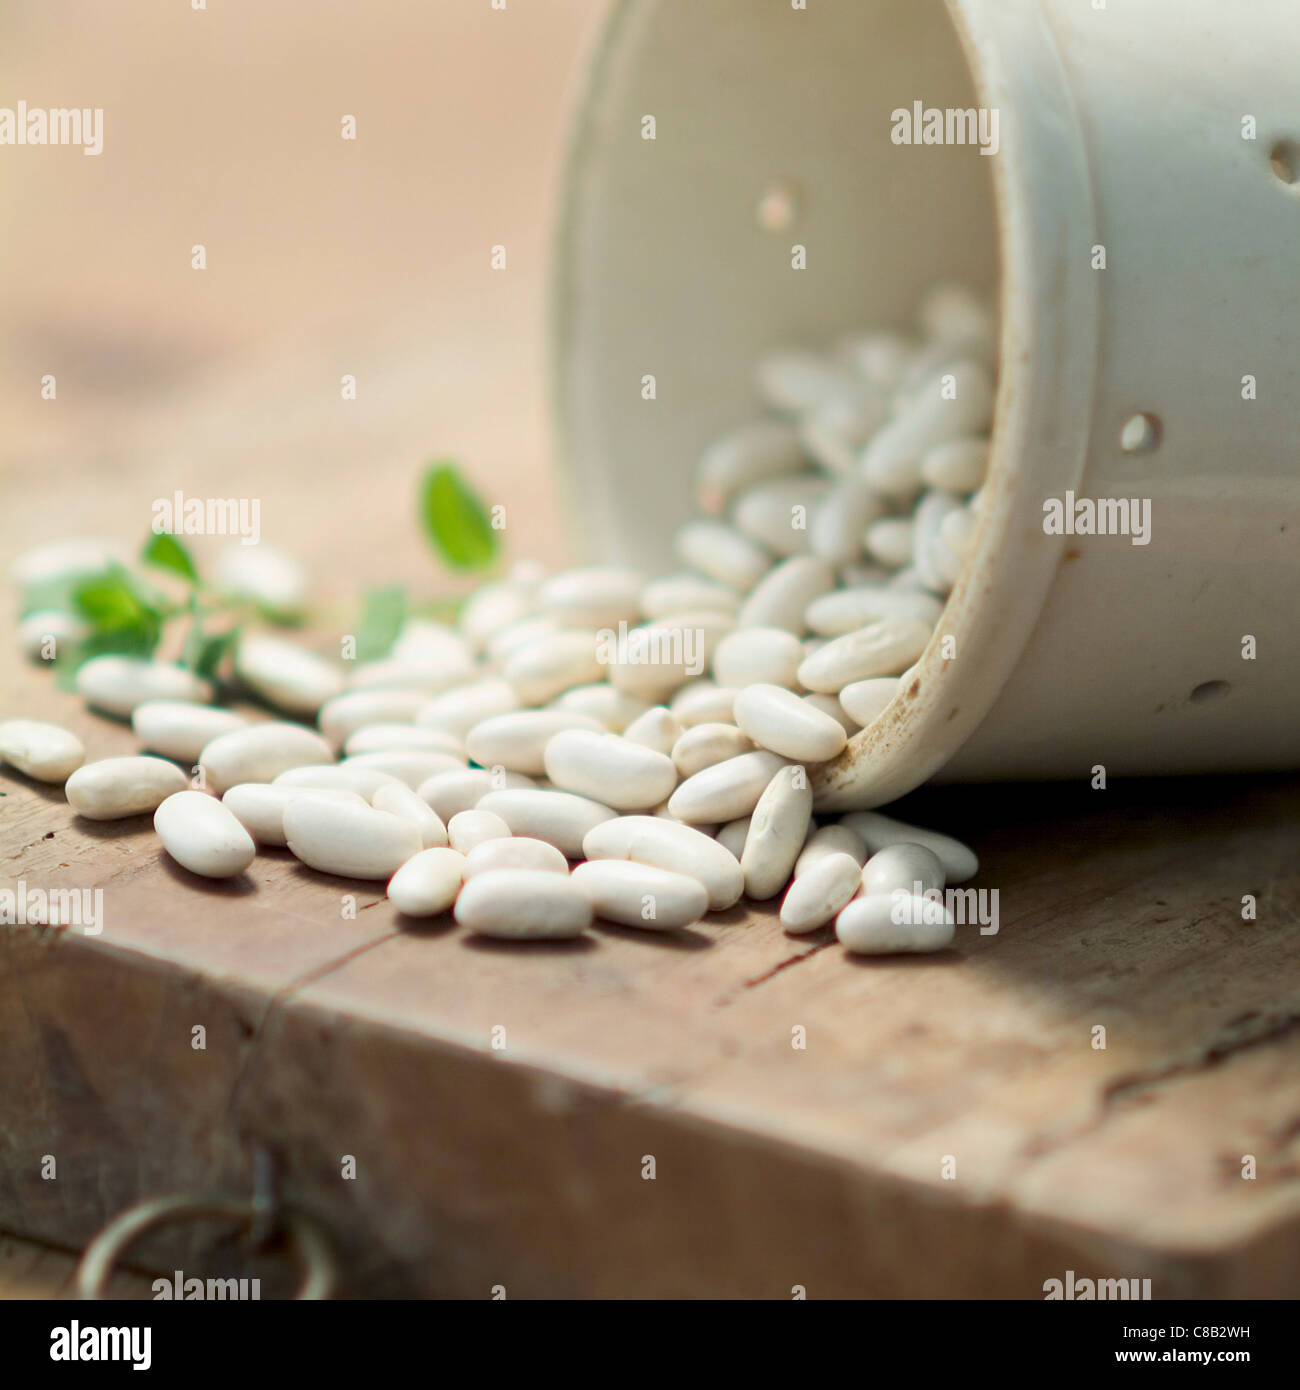 White coco beans Stock Photo